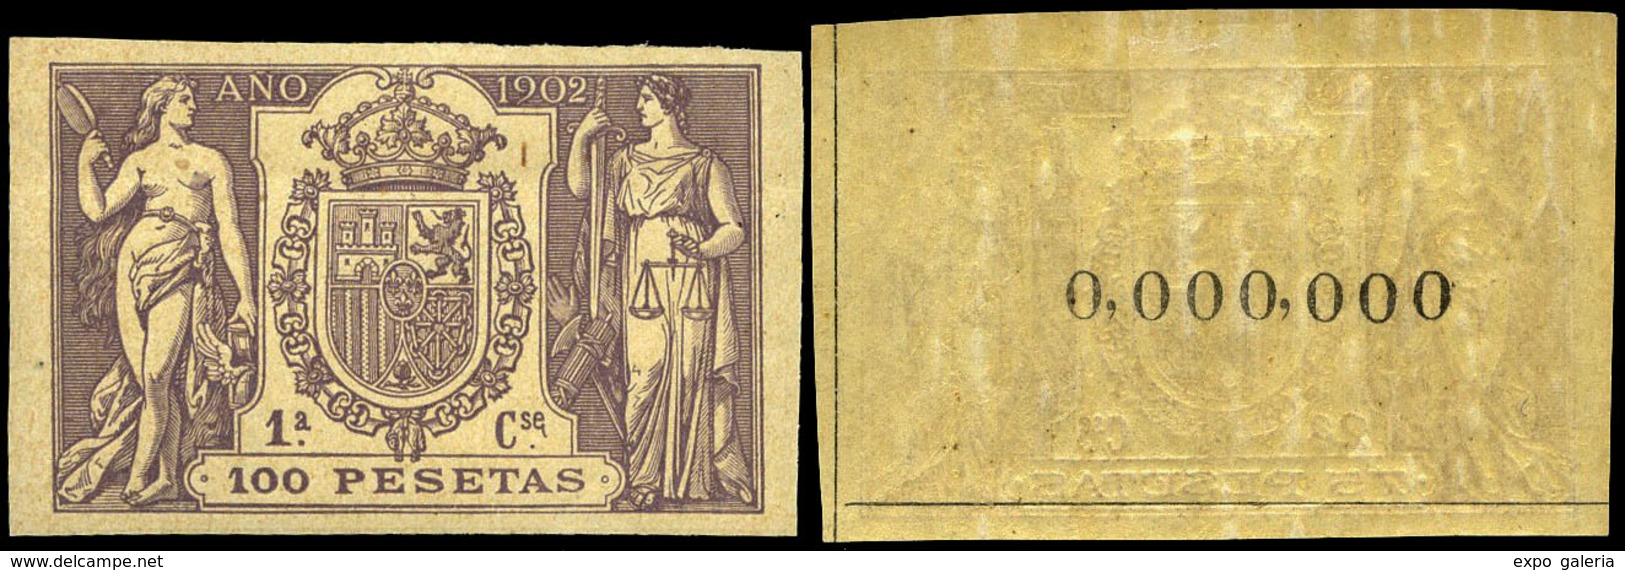 Alemany 499/509 - 1902. Pólizas. 11 Valores. Serie Completa Con Numeración 000.000 Al Dorso. Goma Original - Fiscali